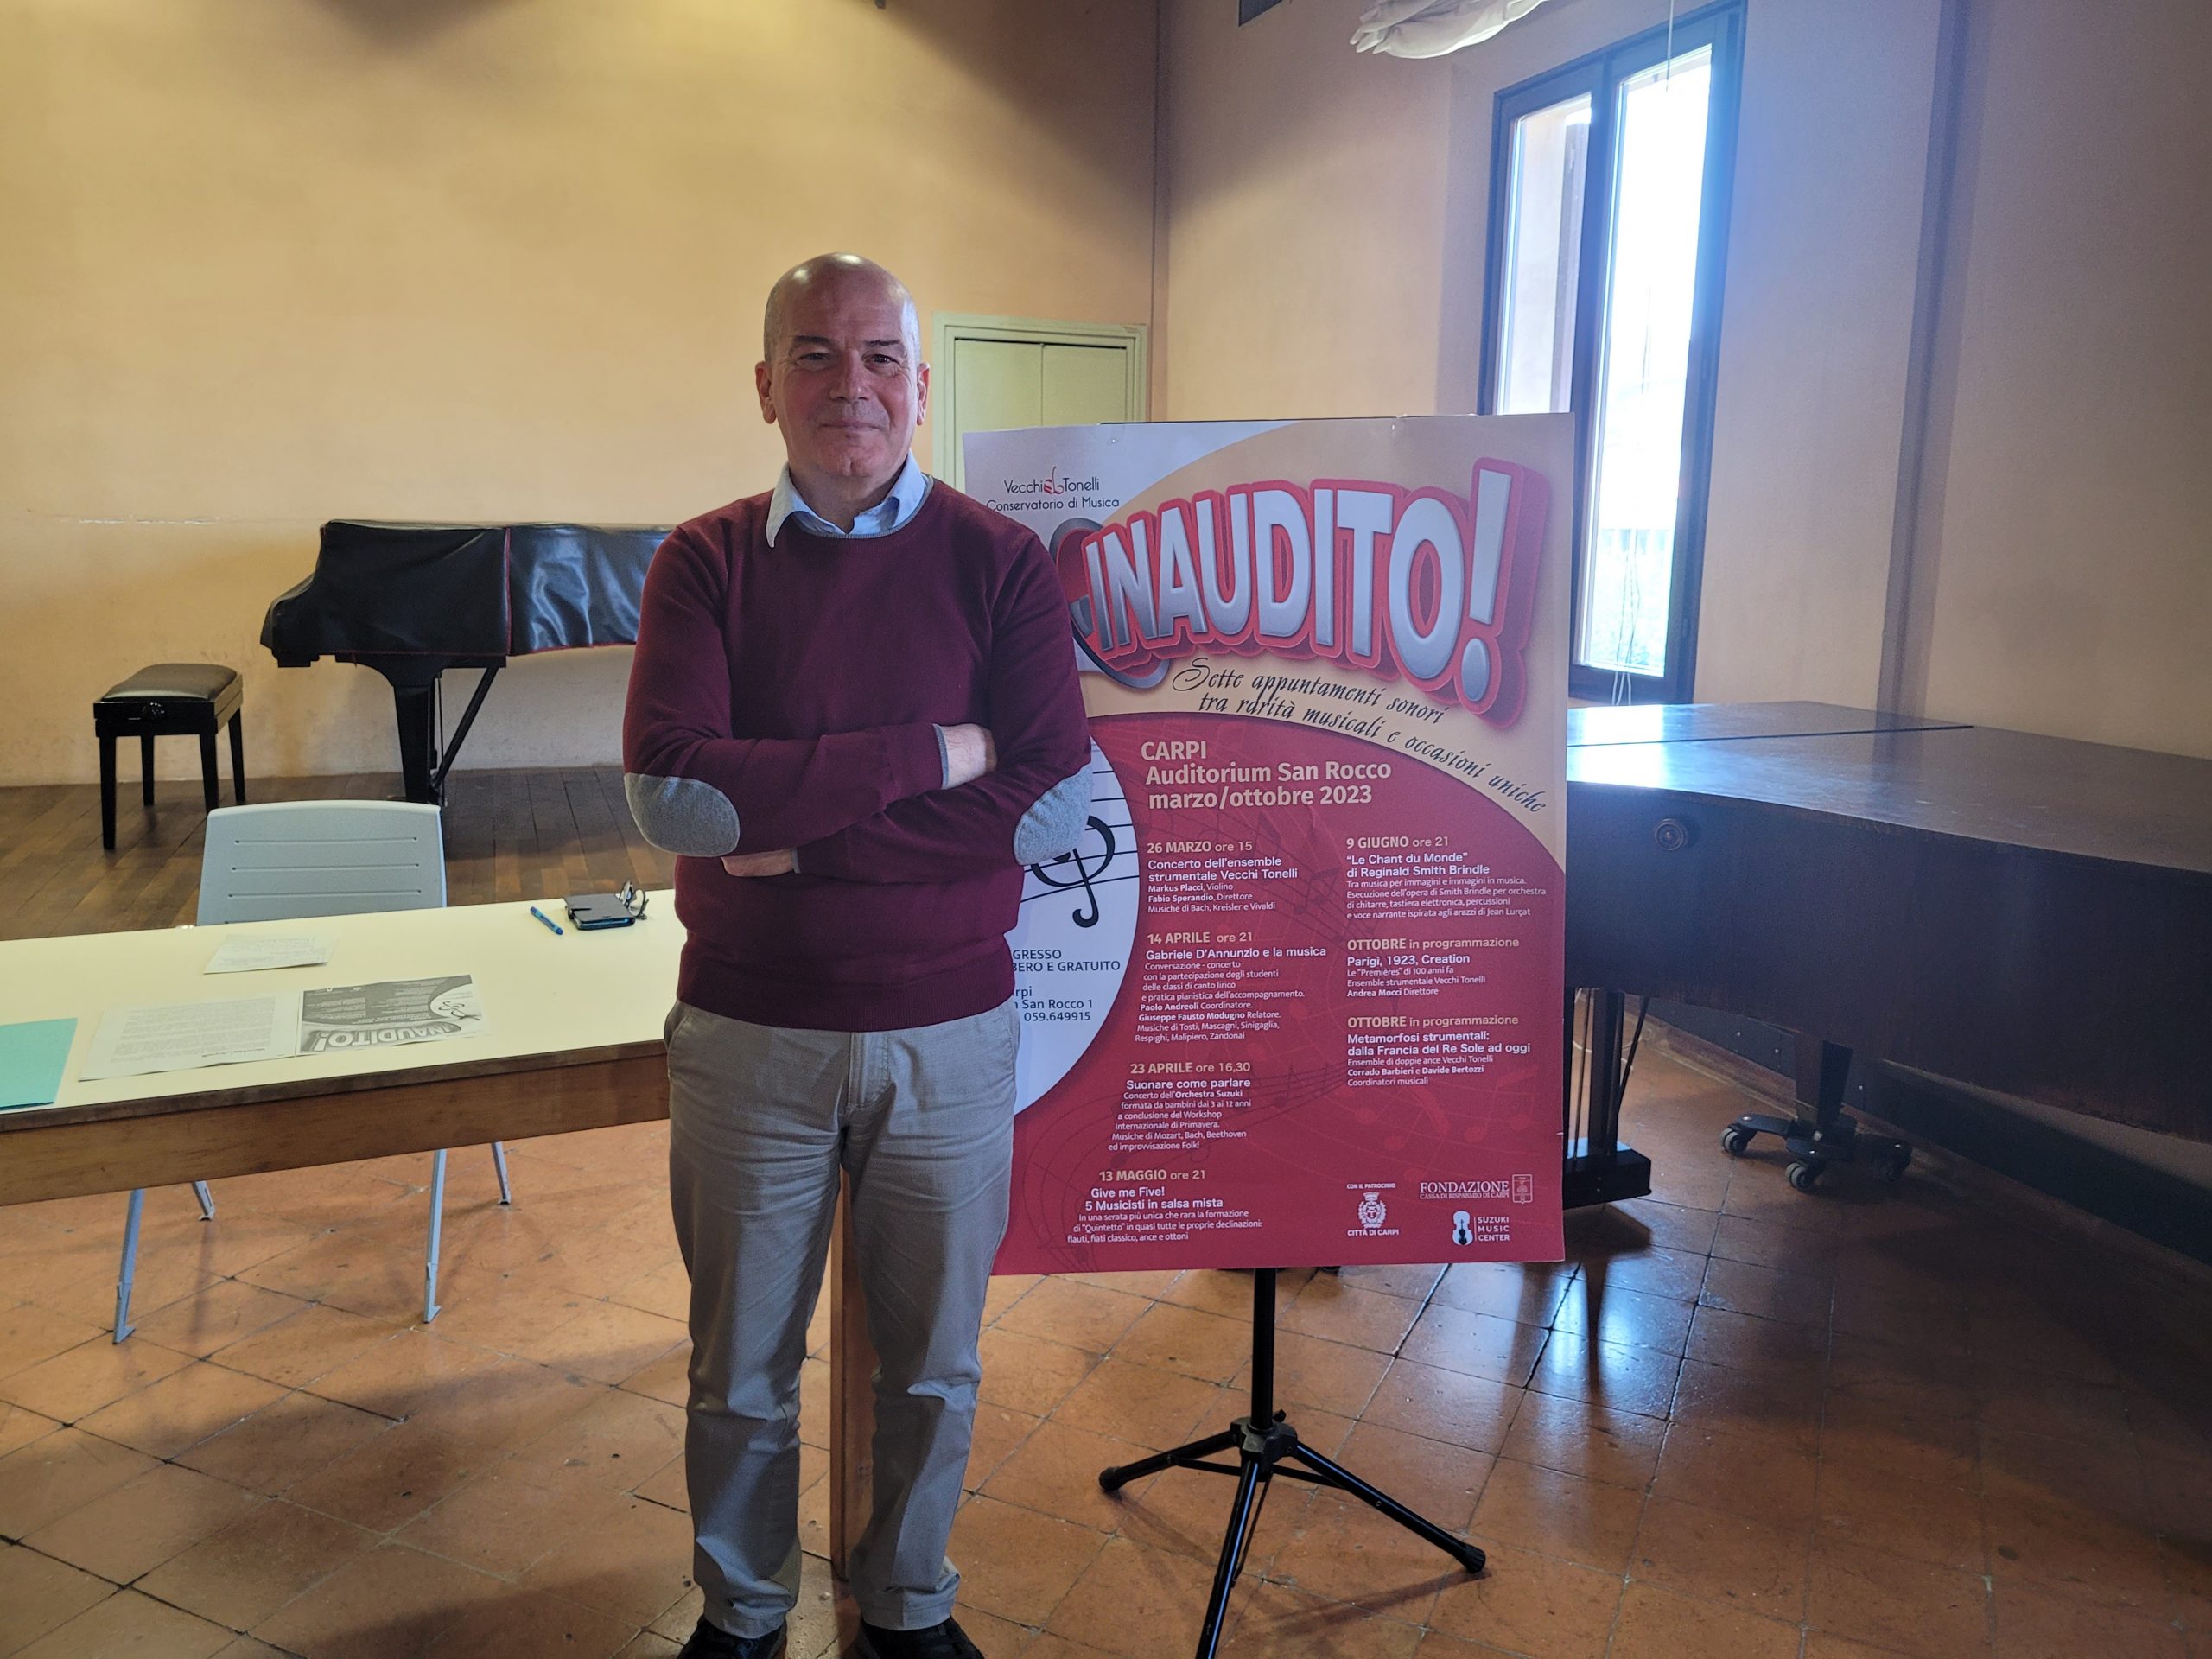 Il Conservatorio Musicale Vecchi Tonelli presenta “INAUDITO!”